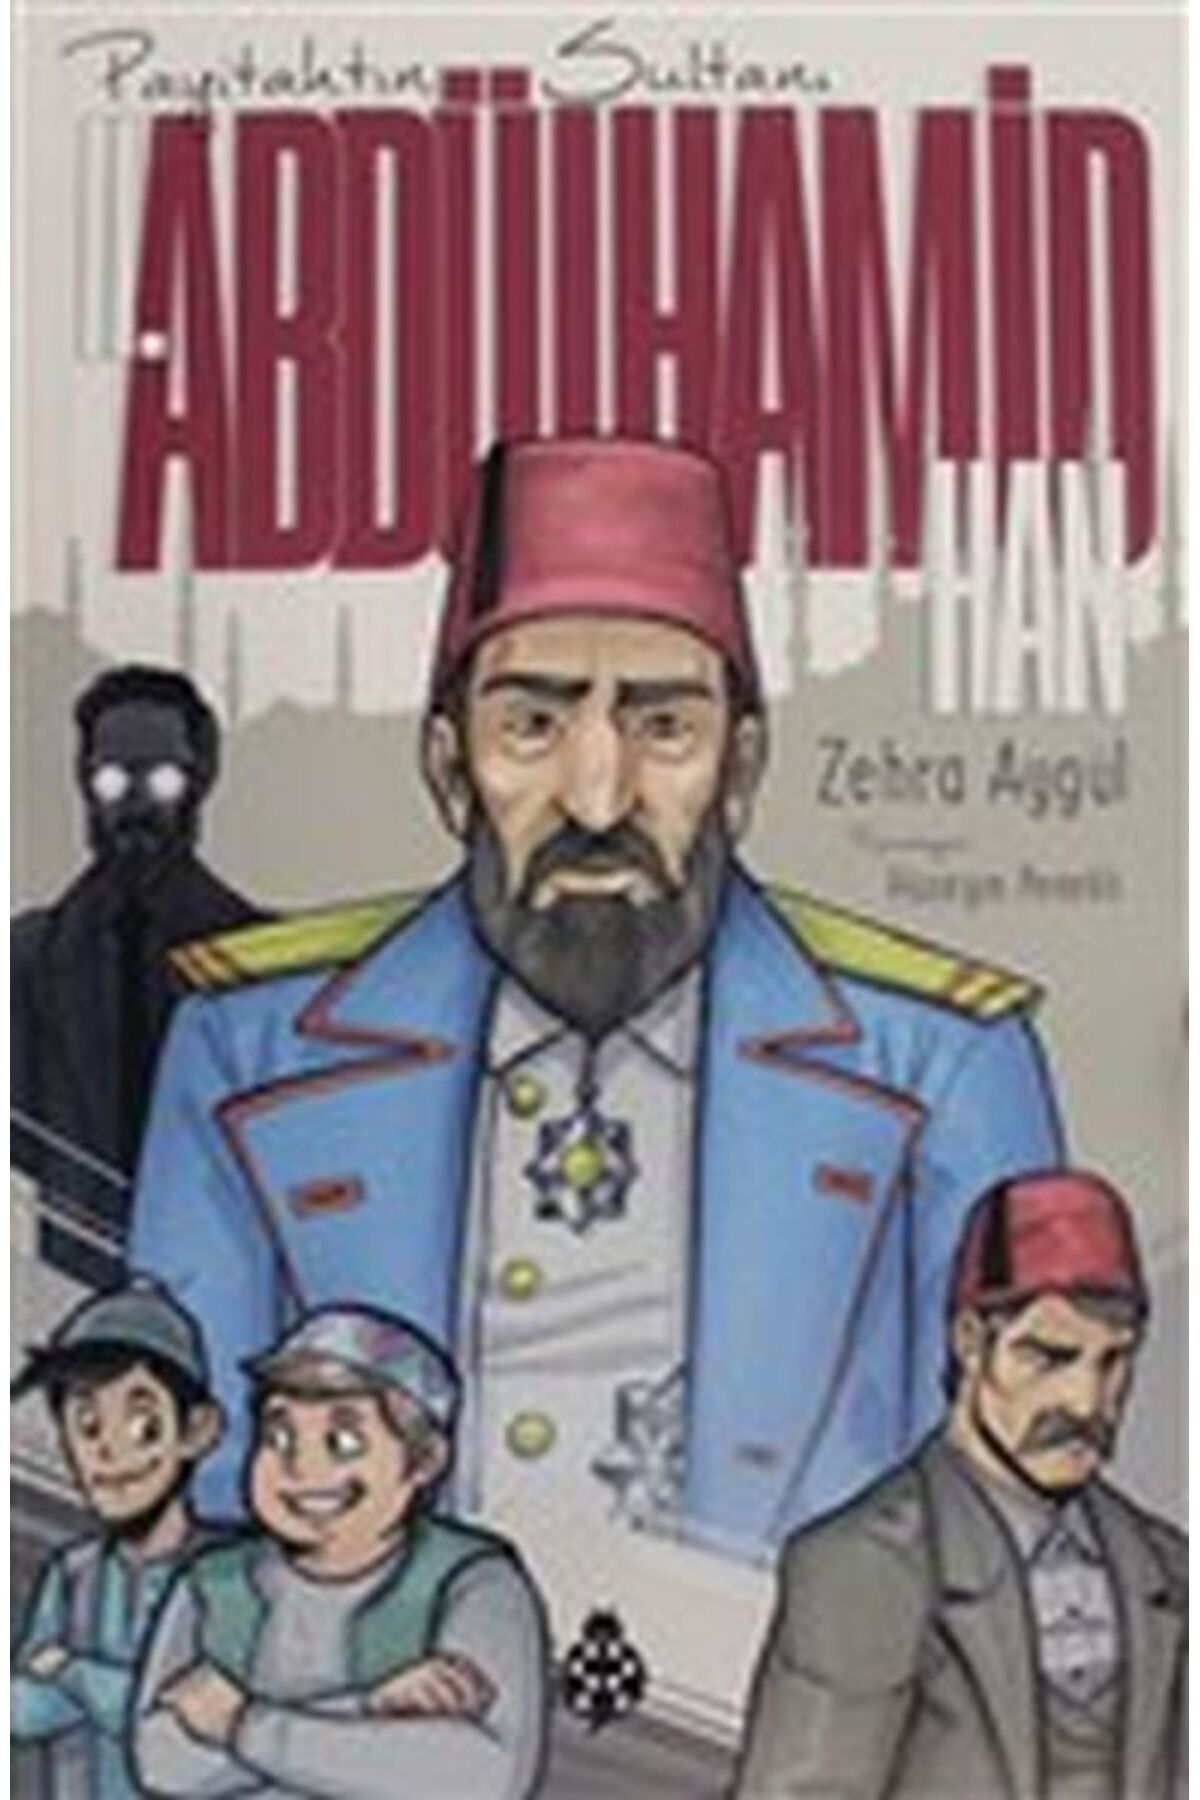 Uğurböceği Yayınları Iı. Abdülhamid Han (PAYİTAHTIN SULTANI)